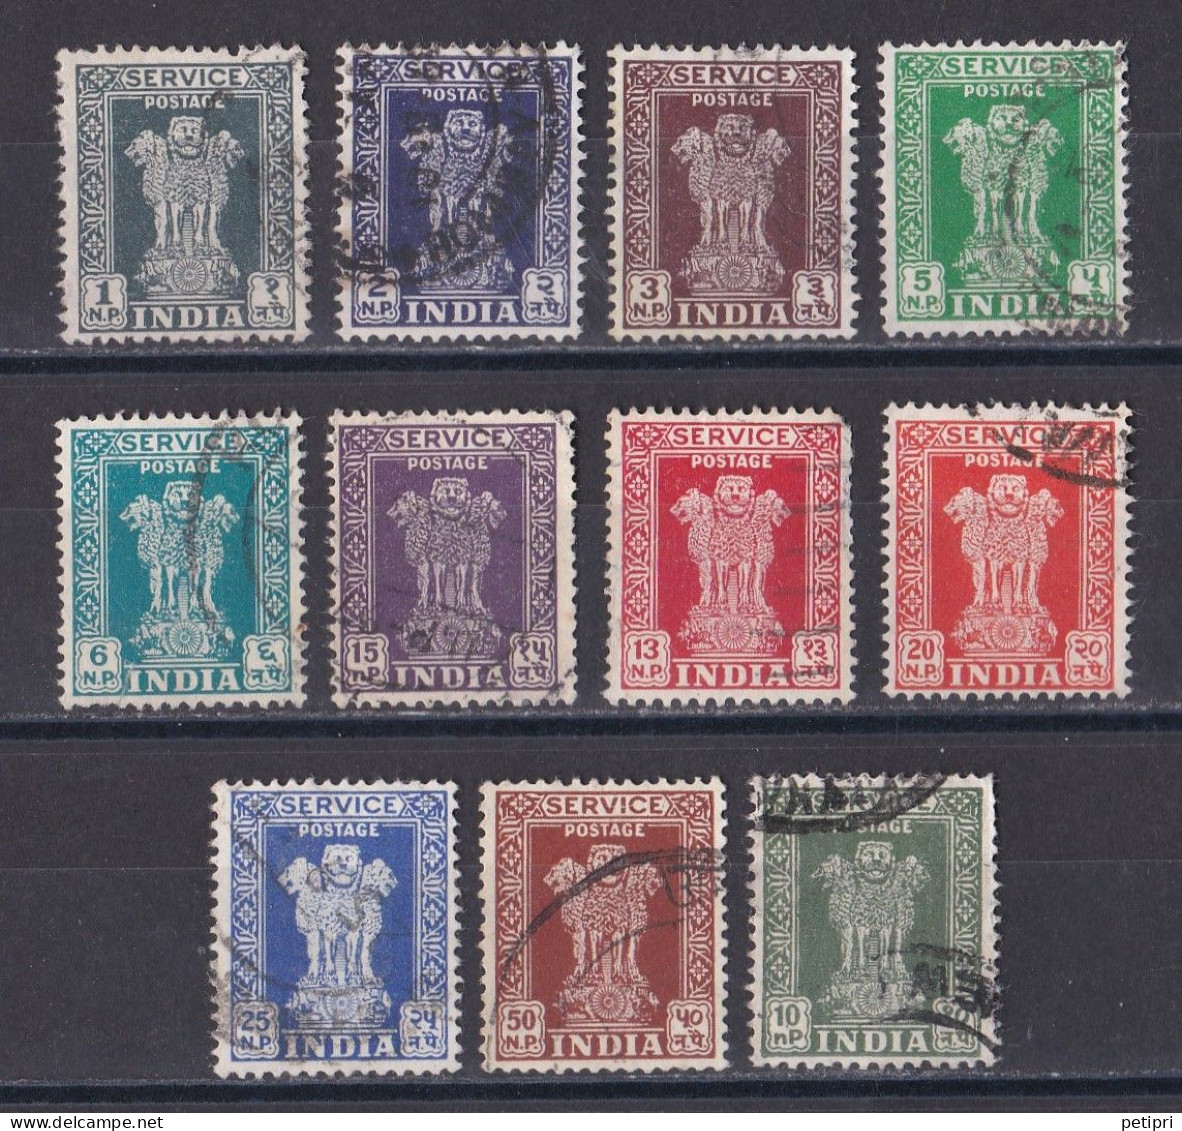 Inde  - Timbre De Service  Y&T N°  14   15   16   17   18  19 A  19 B   20   21  22   27  Oblitérés - Official Stamps